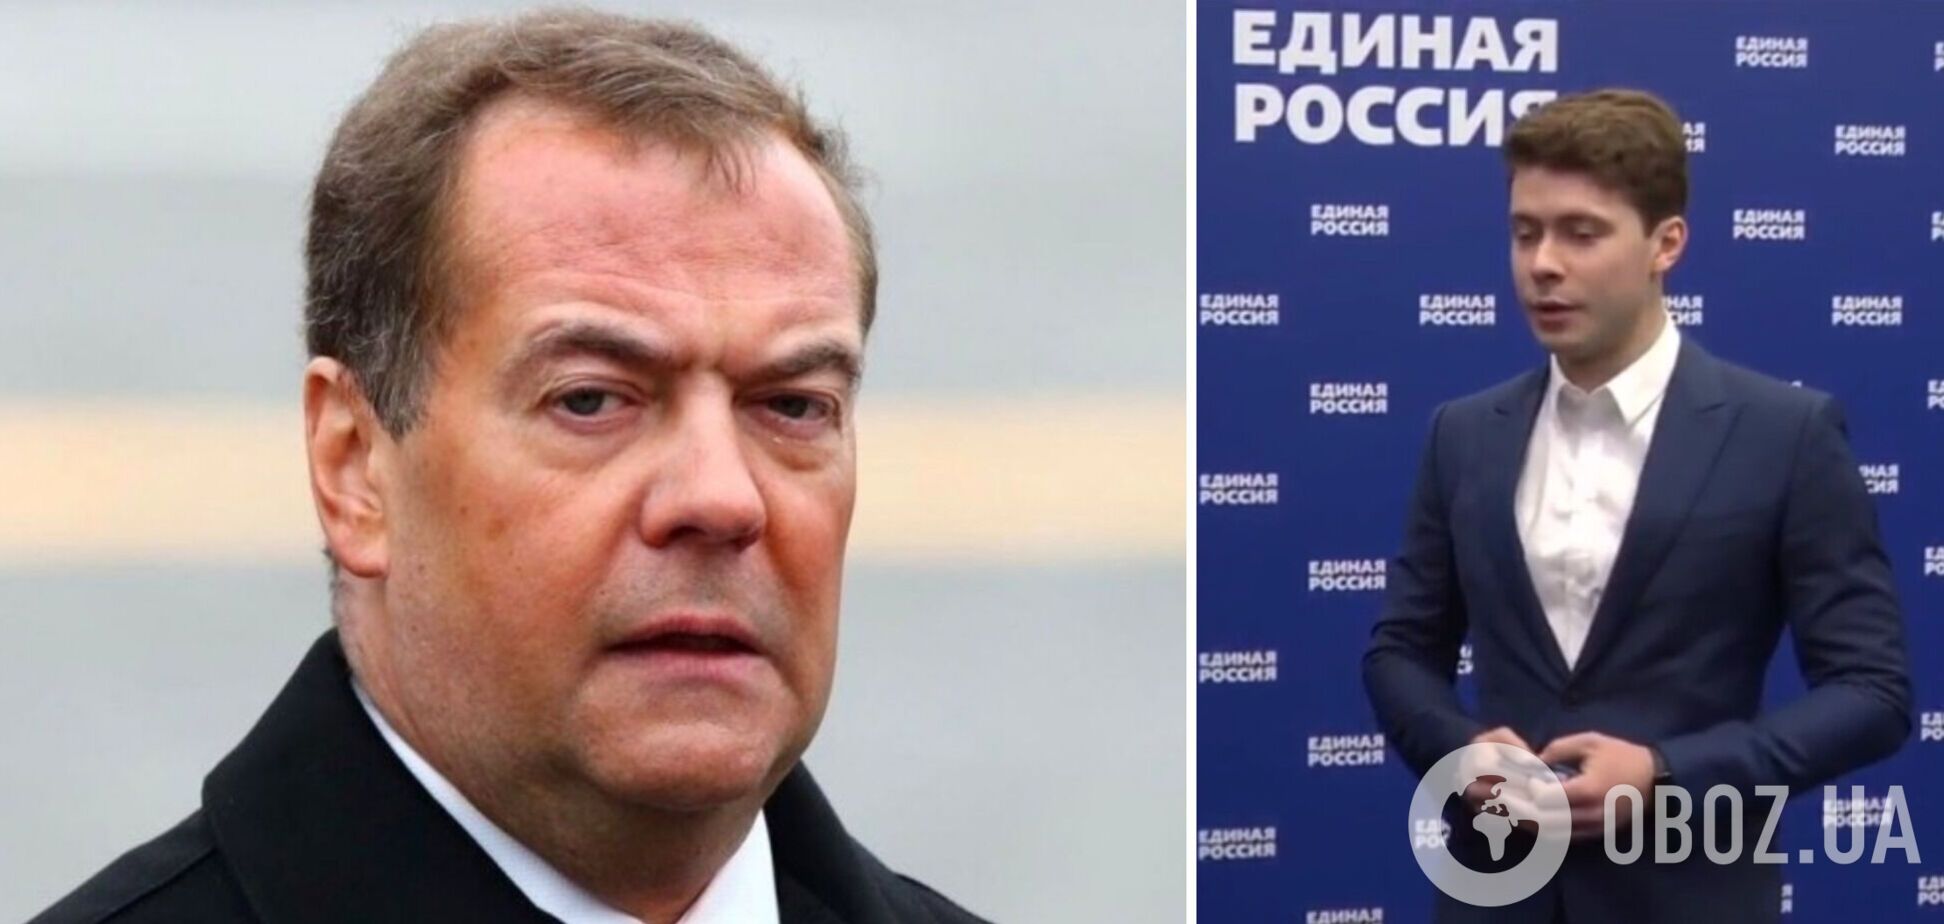 Сын Медведева, которого пригрозили выдворить из США, пополнил ряды путинской 'Единой России'. Видео